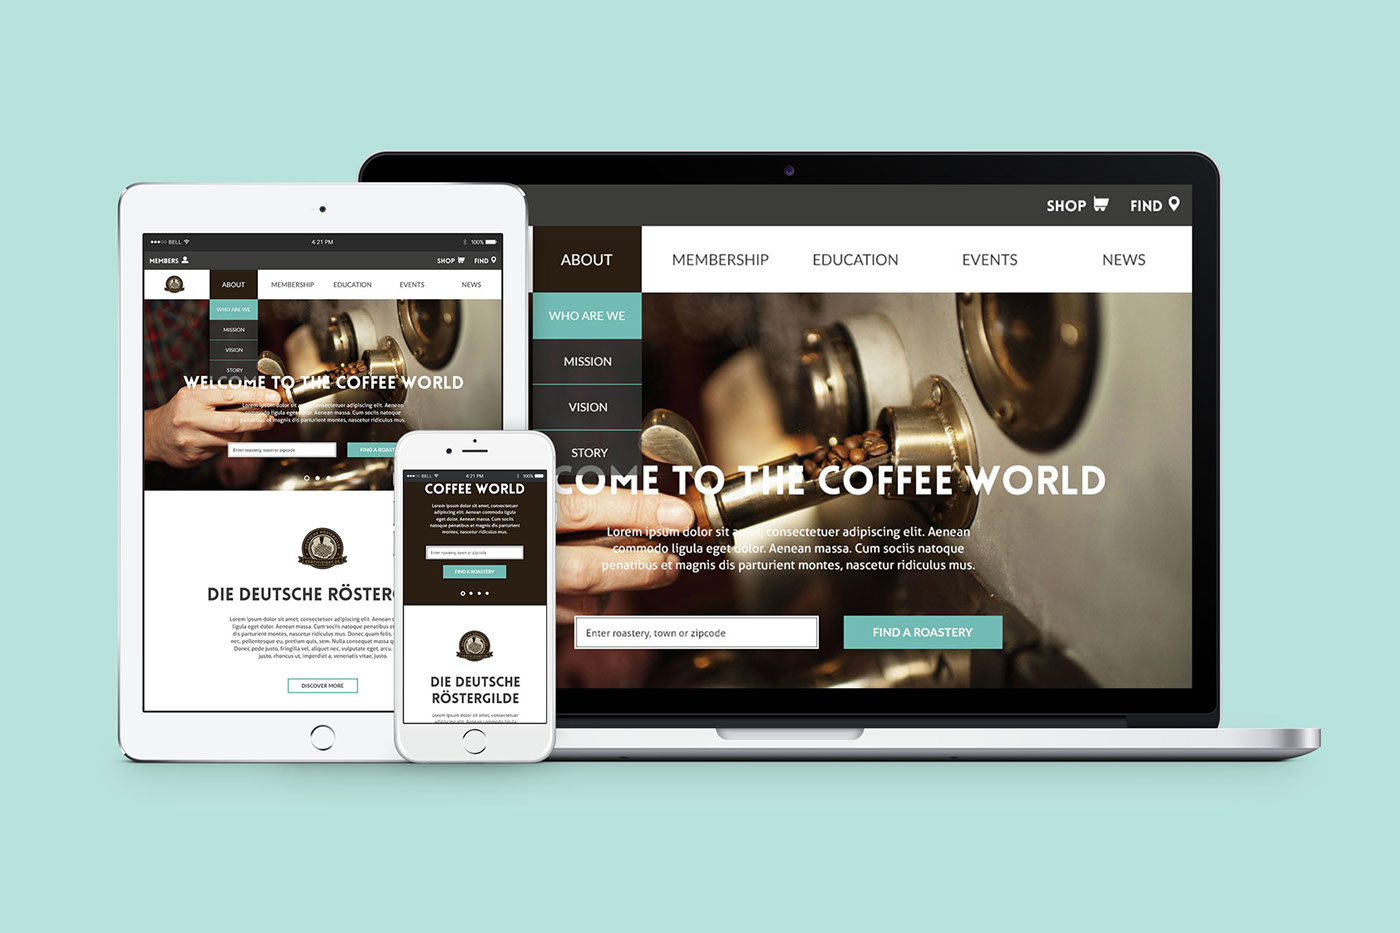 Website redesign ux UI wireframes storyboard Coffee Kaffee